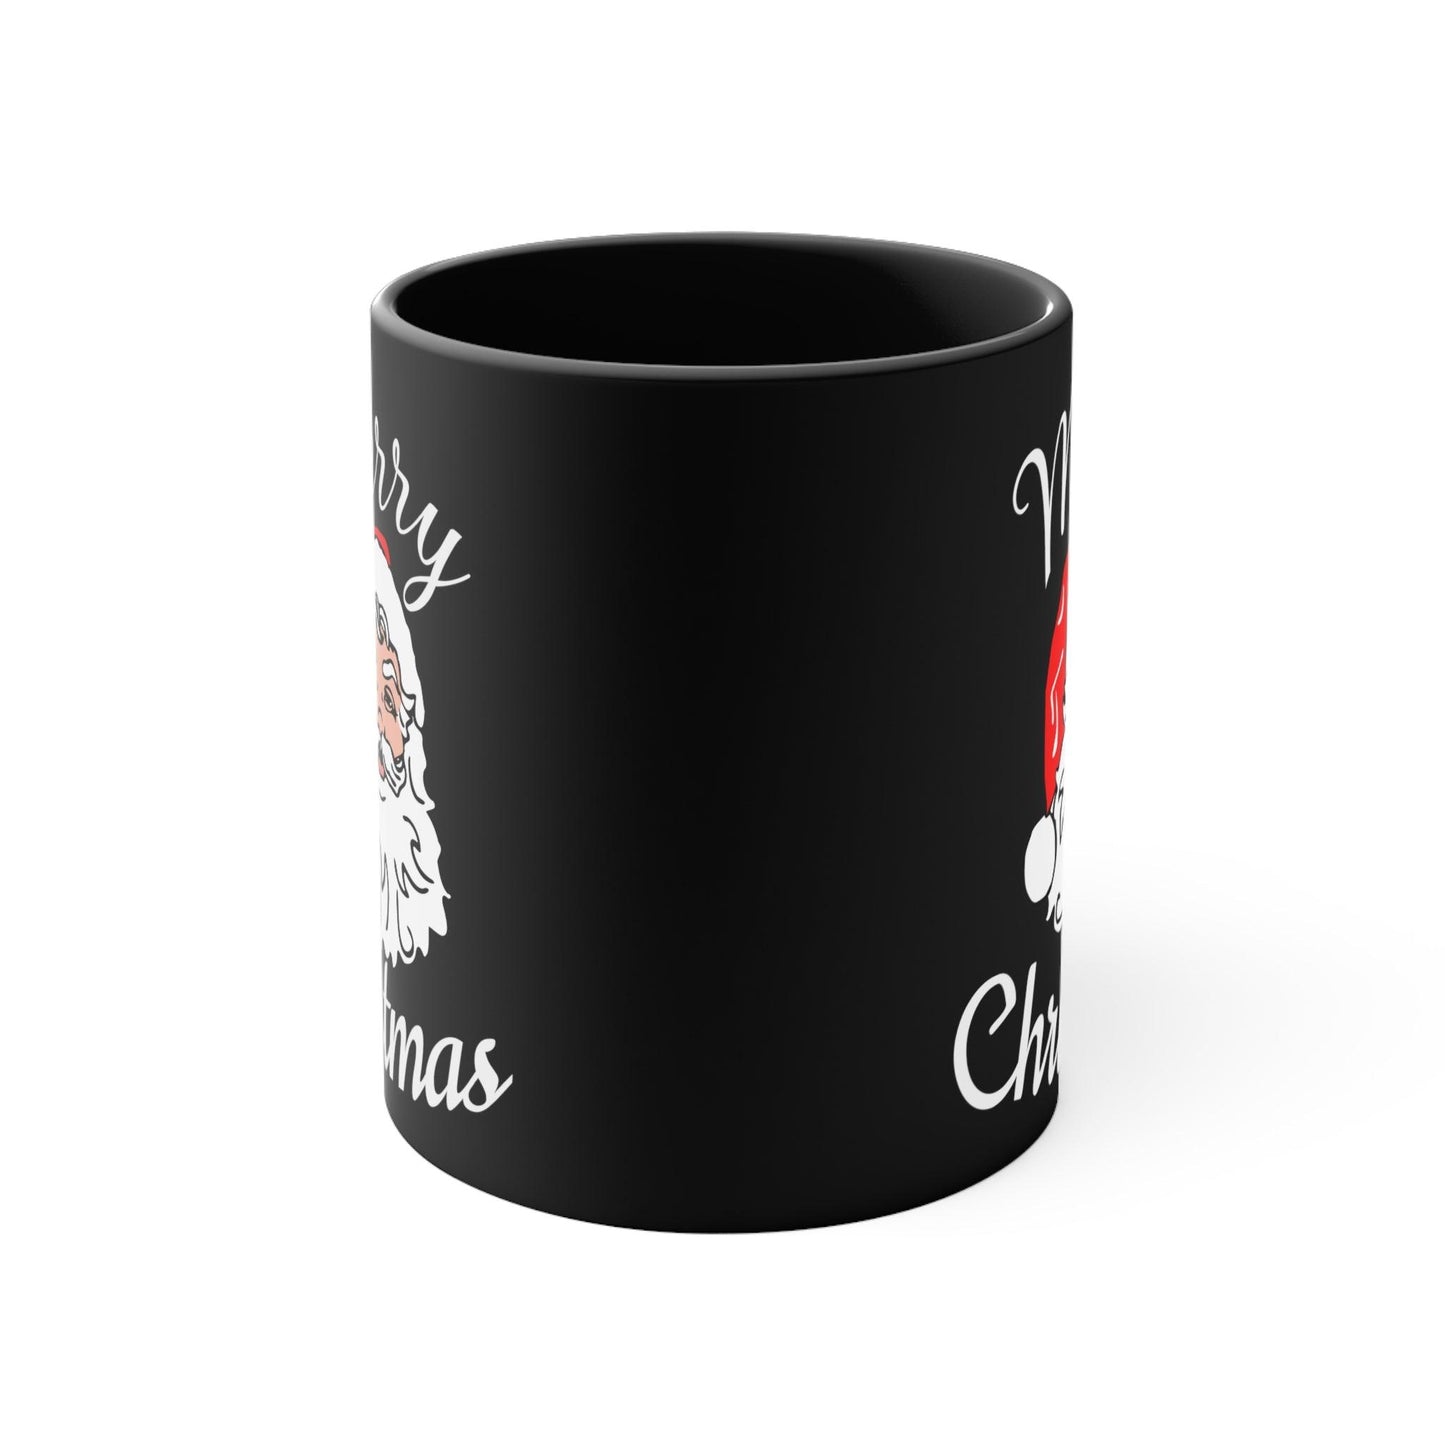 Santa, Merry Christmas Coffee Mug, Christmas Coffee mug Hot Cocoa Mug 11oz Christmas Gift for Coffee lovers - Giftsmojo